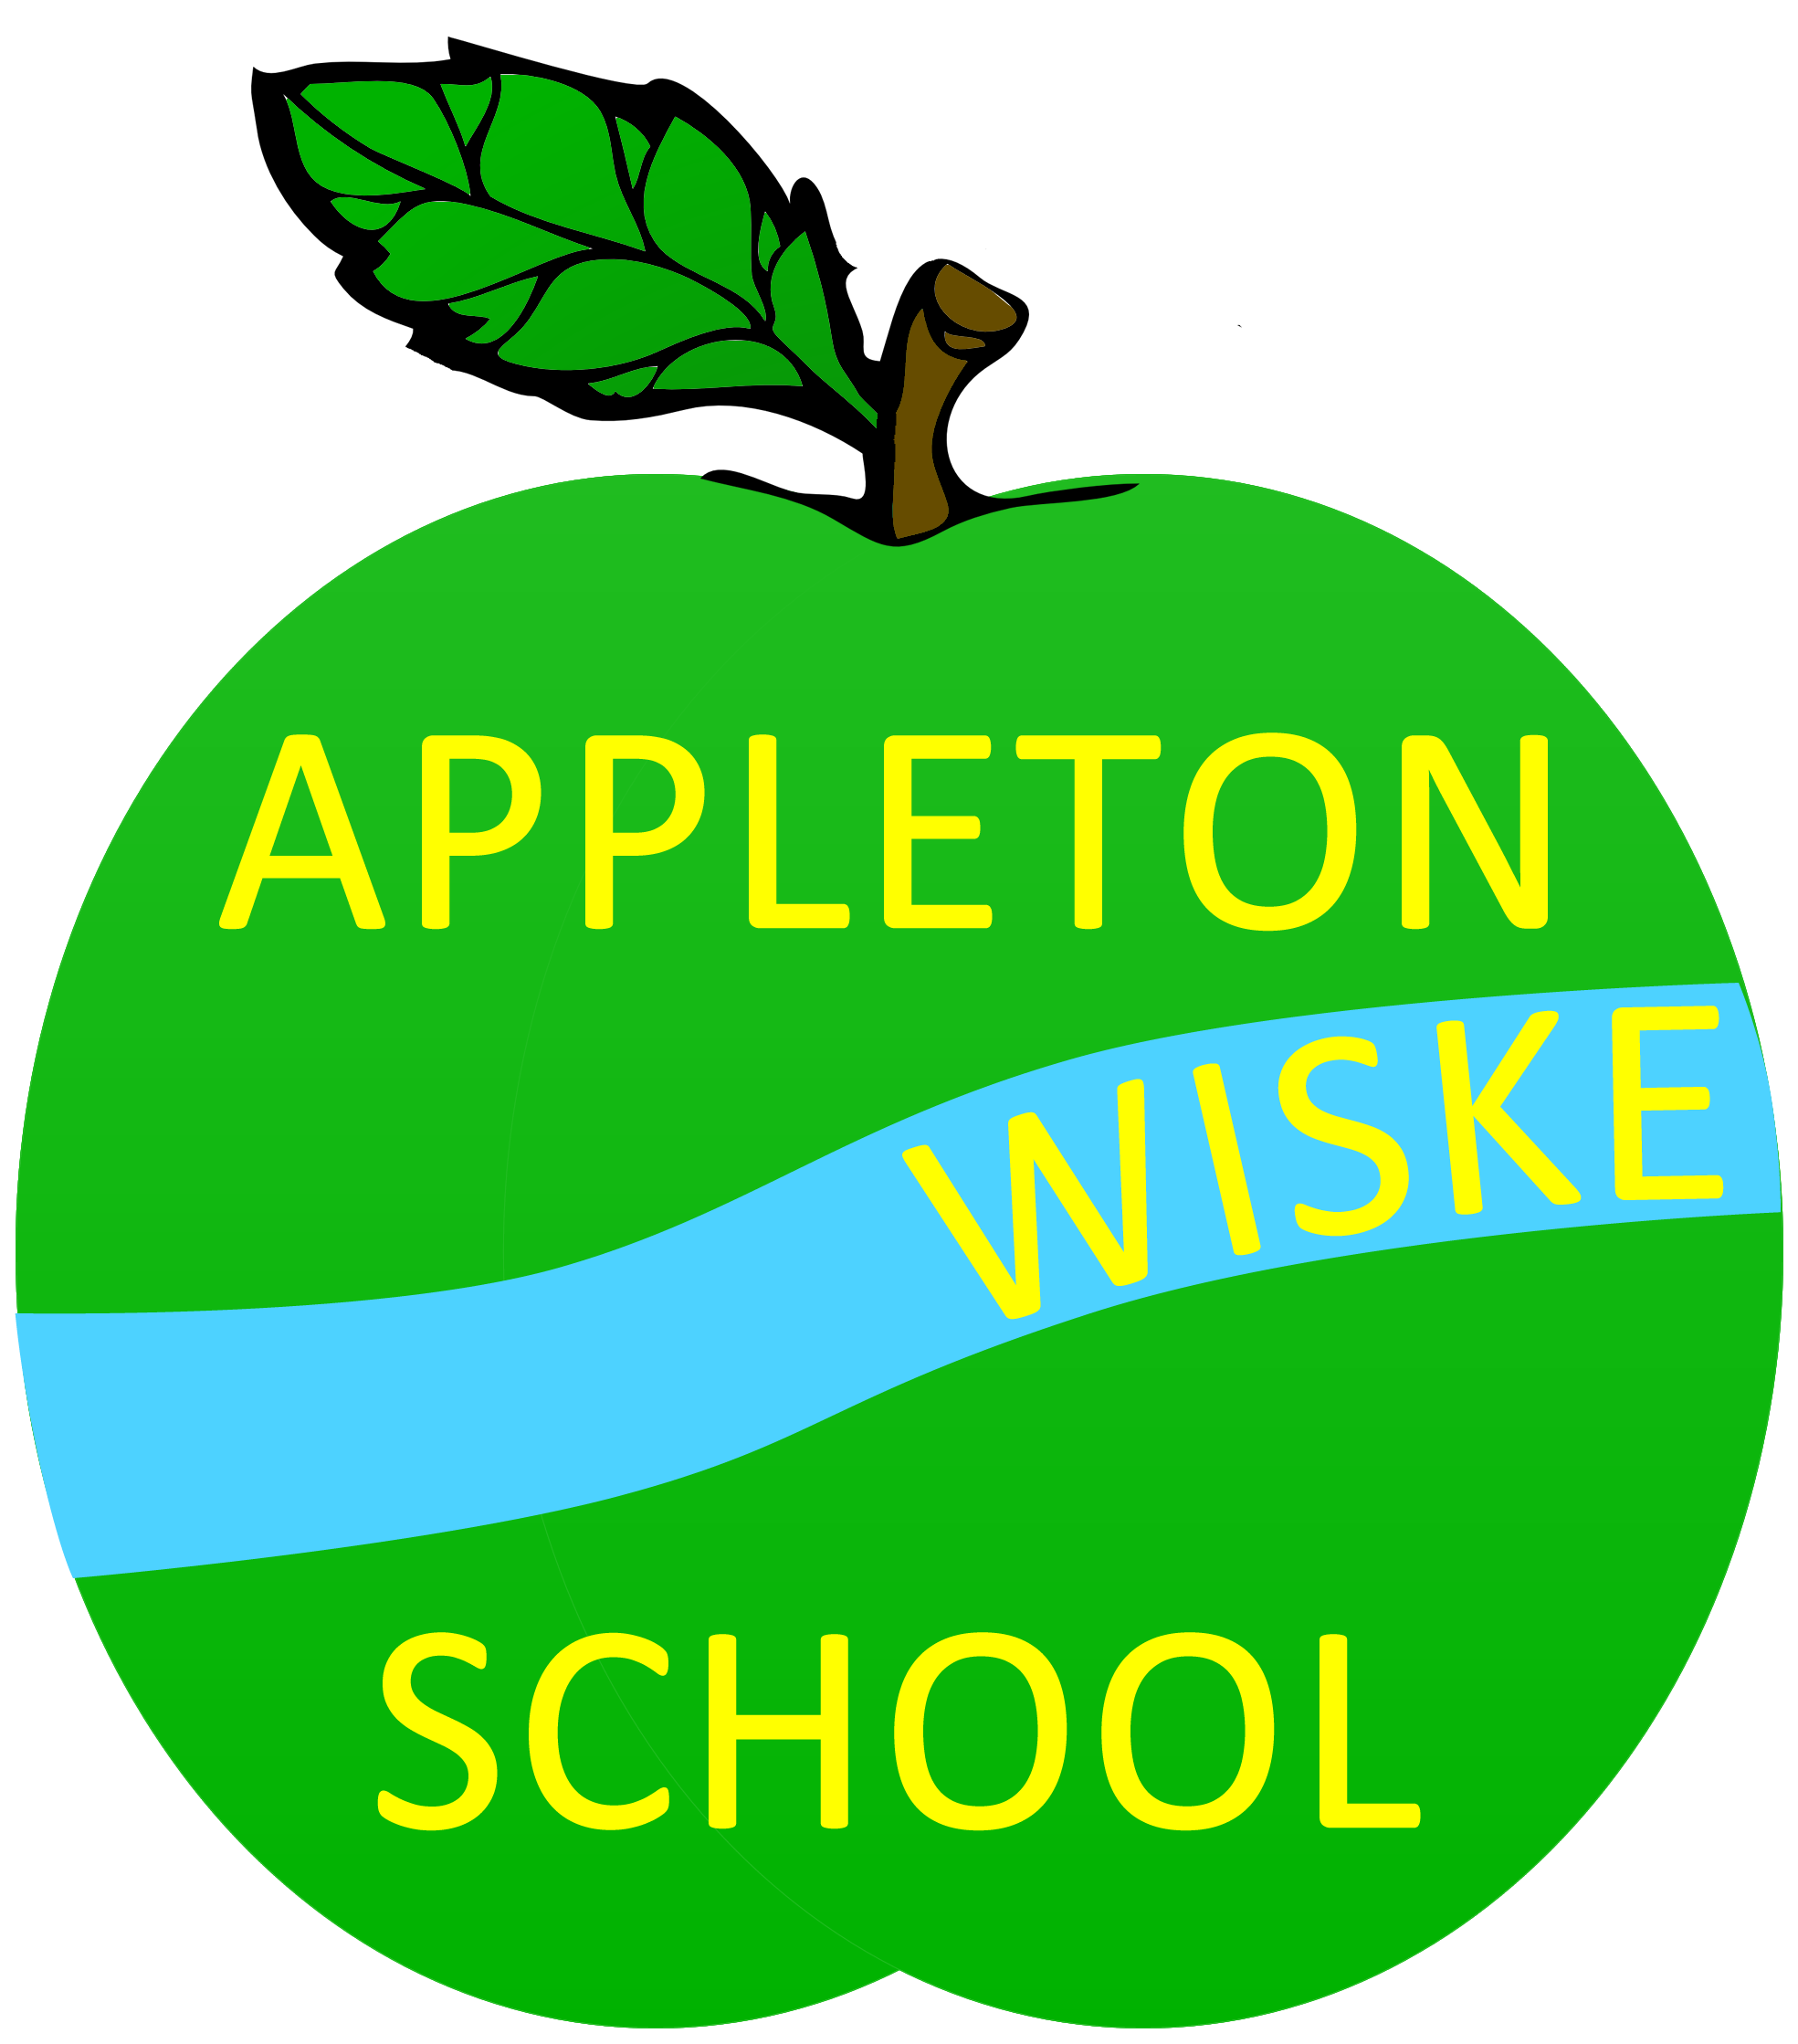 Link to Appleton Wiske website